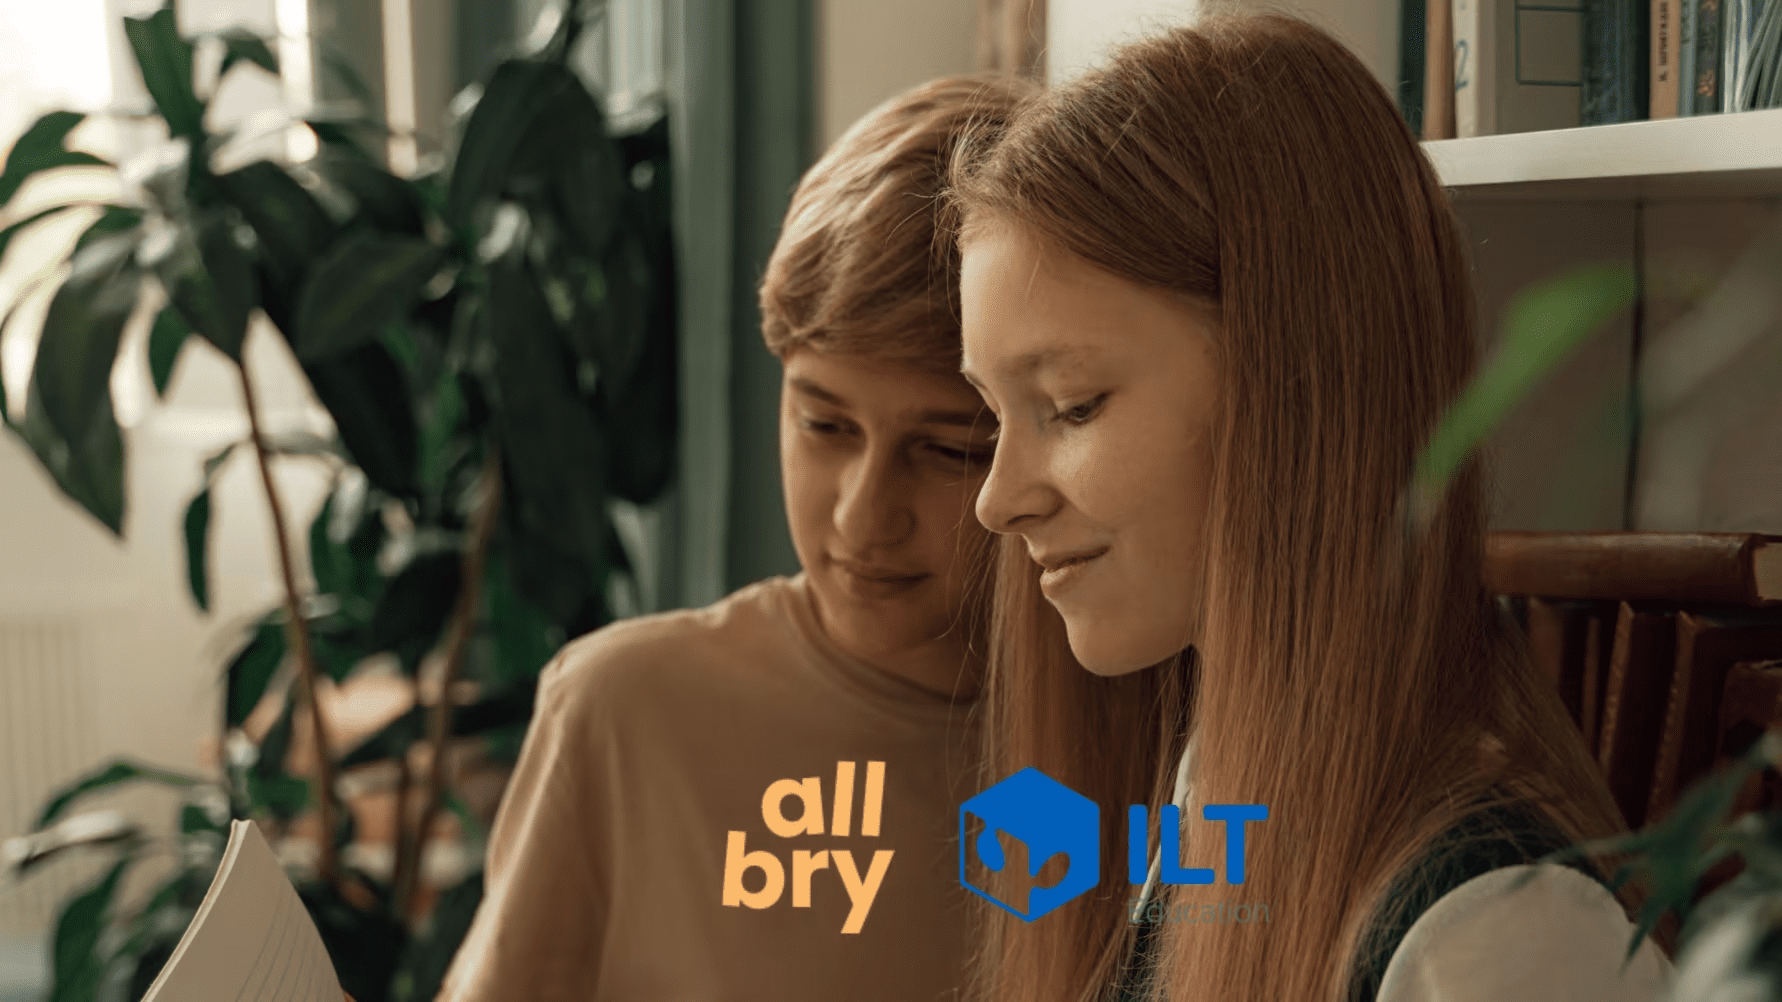 Allbry finns via ILT Education i hela Sverige